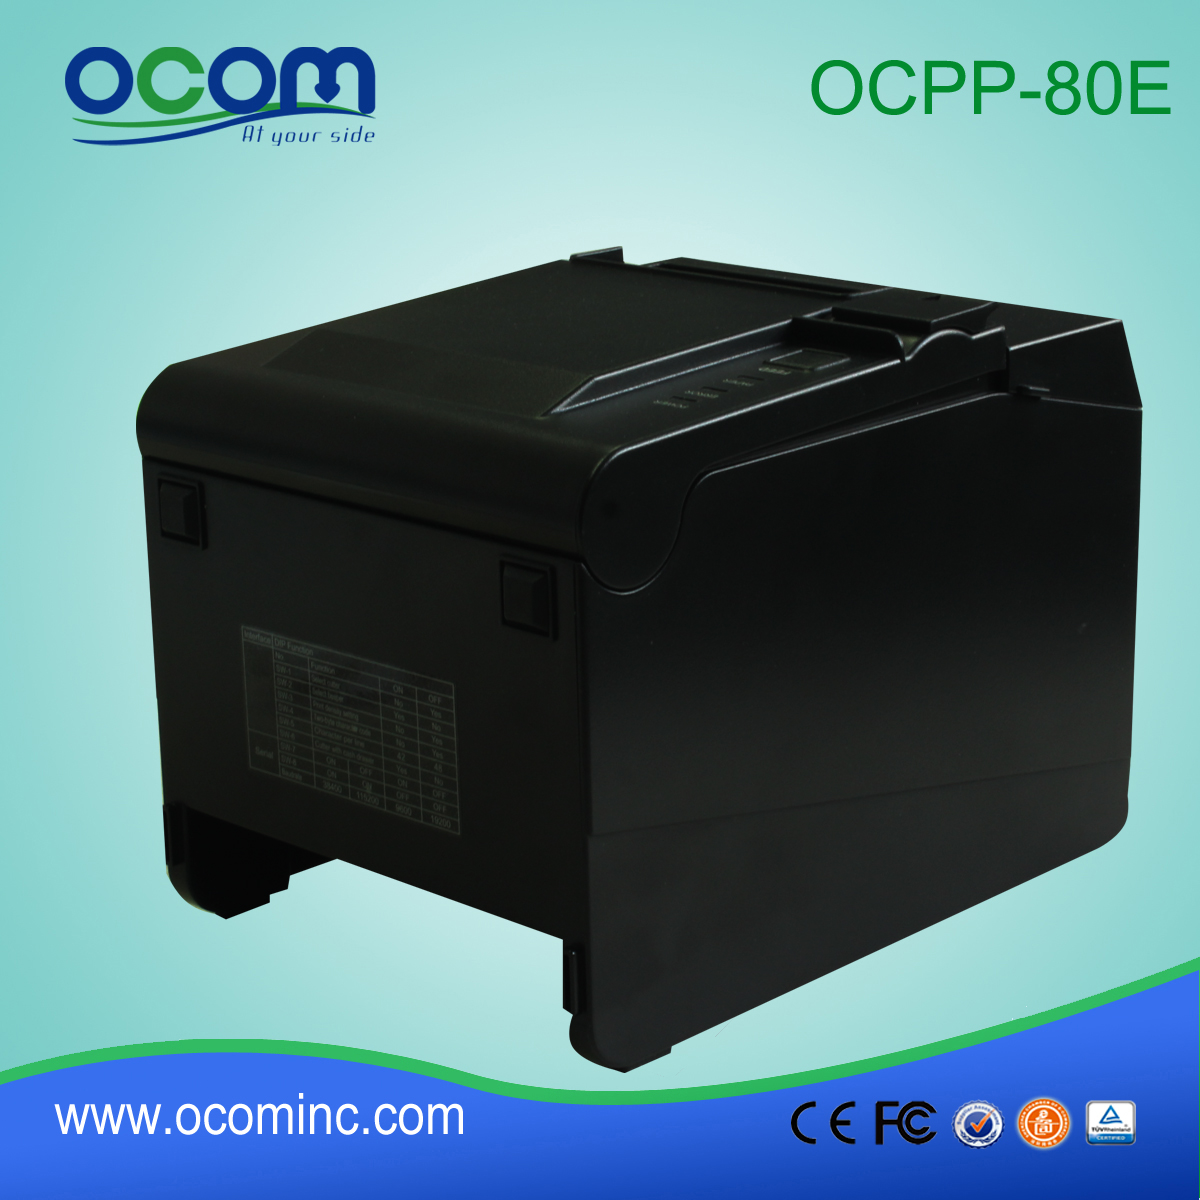 υψηλής ποιότητας μηχανή εκτύπωσης χαρτονομισμάτων (OCPP-80E)